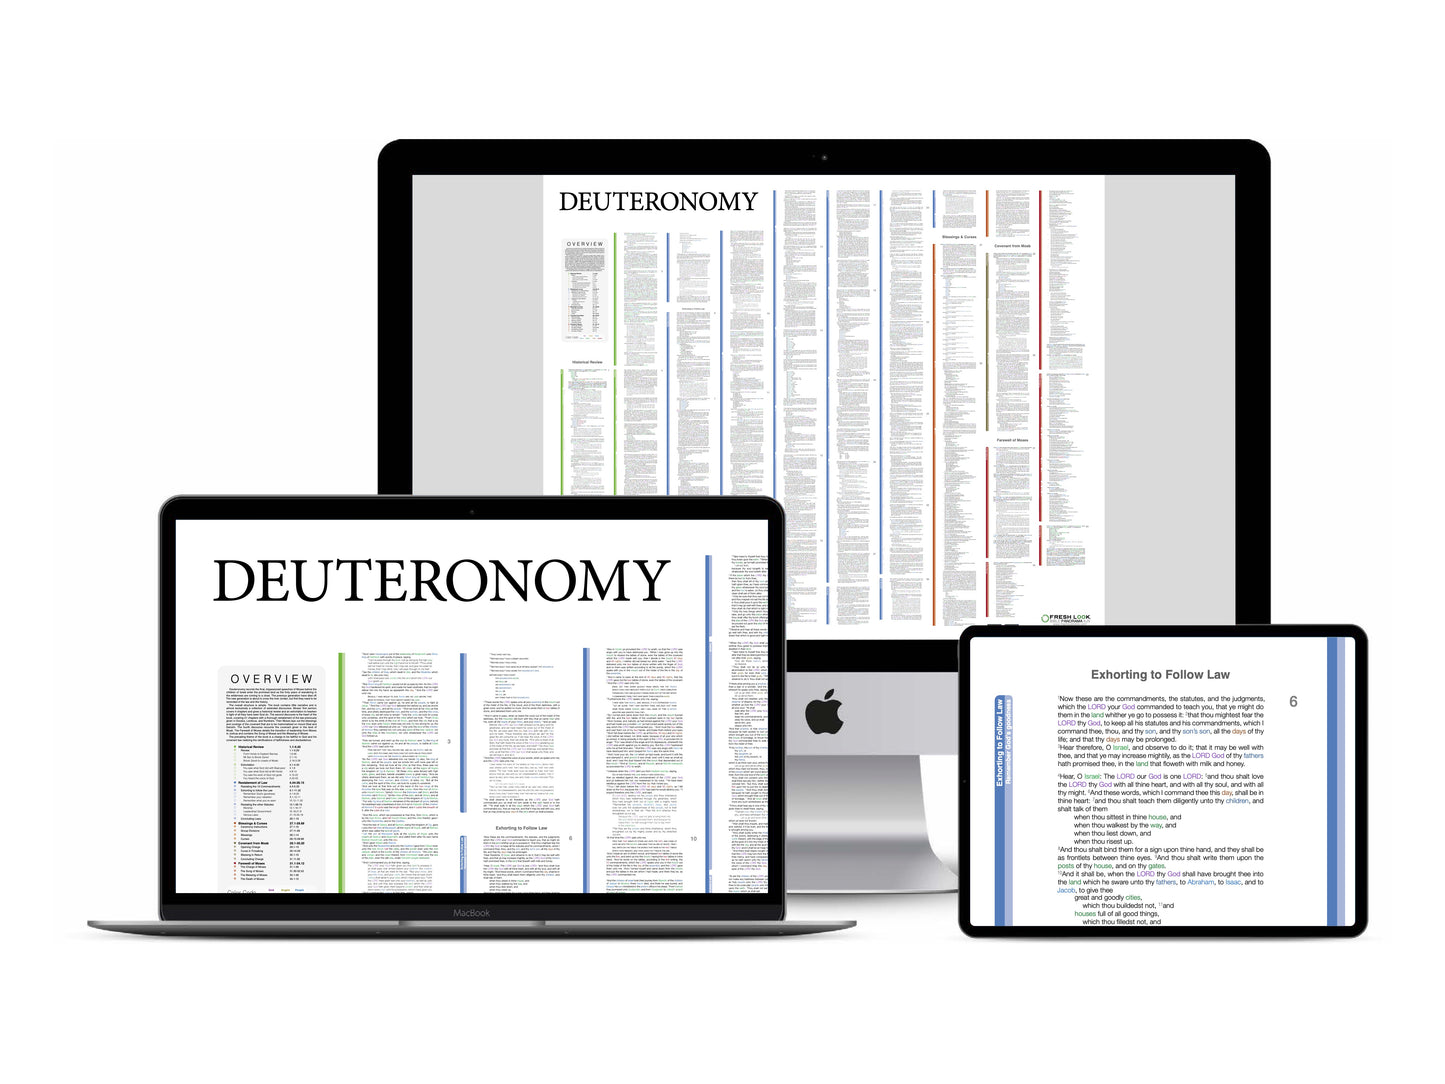 Deuteronomy Panorama PDF